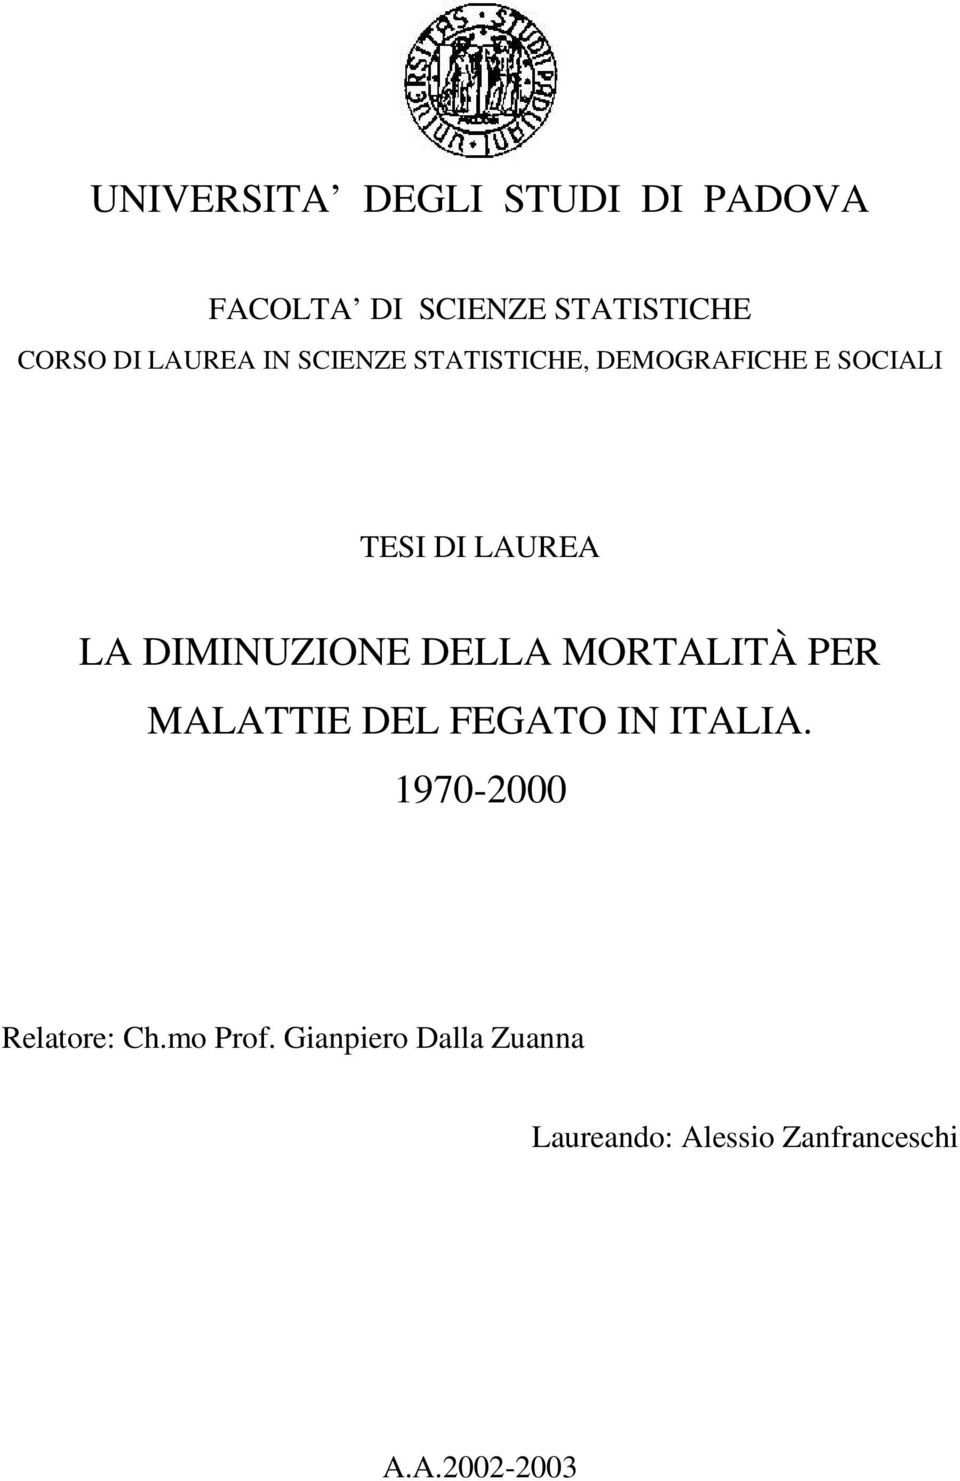 DIMINUZIONE DELLA MORTALITÀ PER MALATTIE DEL FEGATO IN ITALIA.